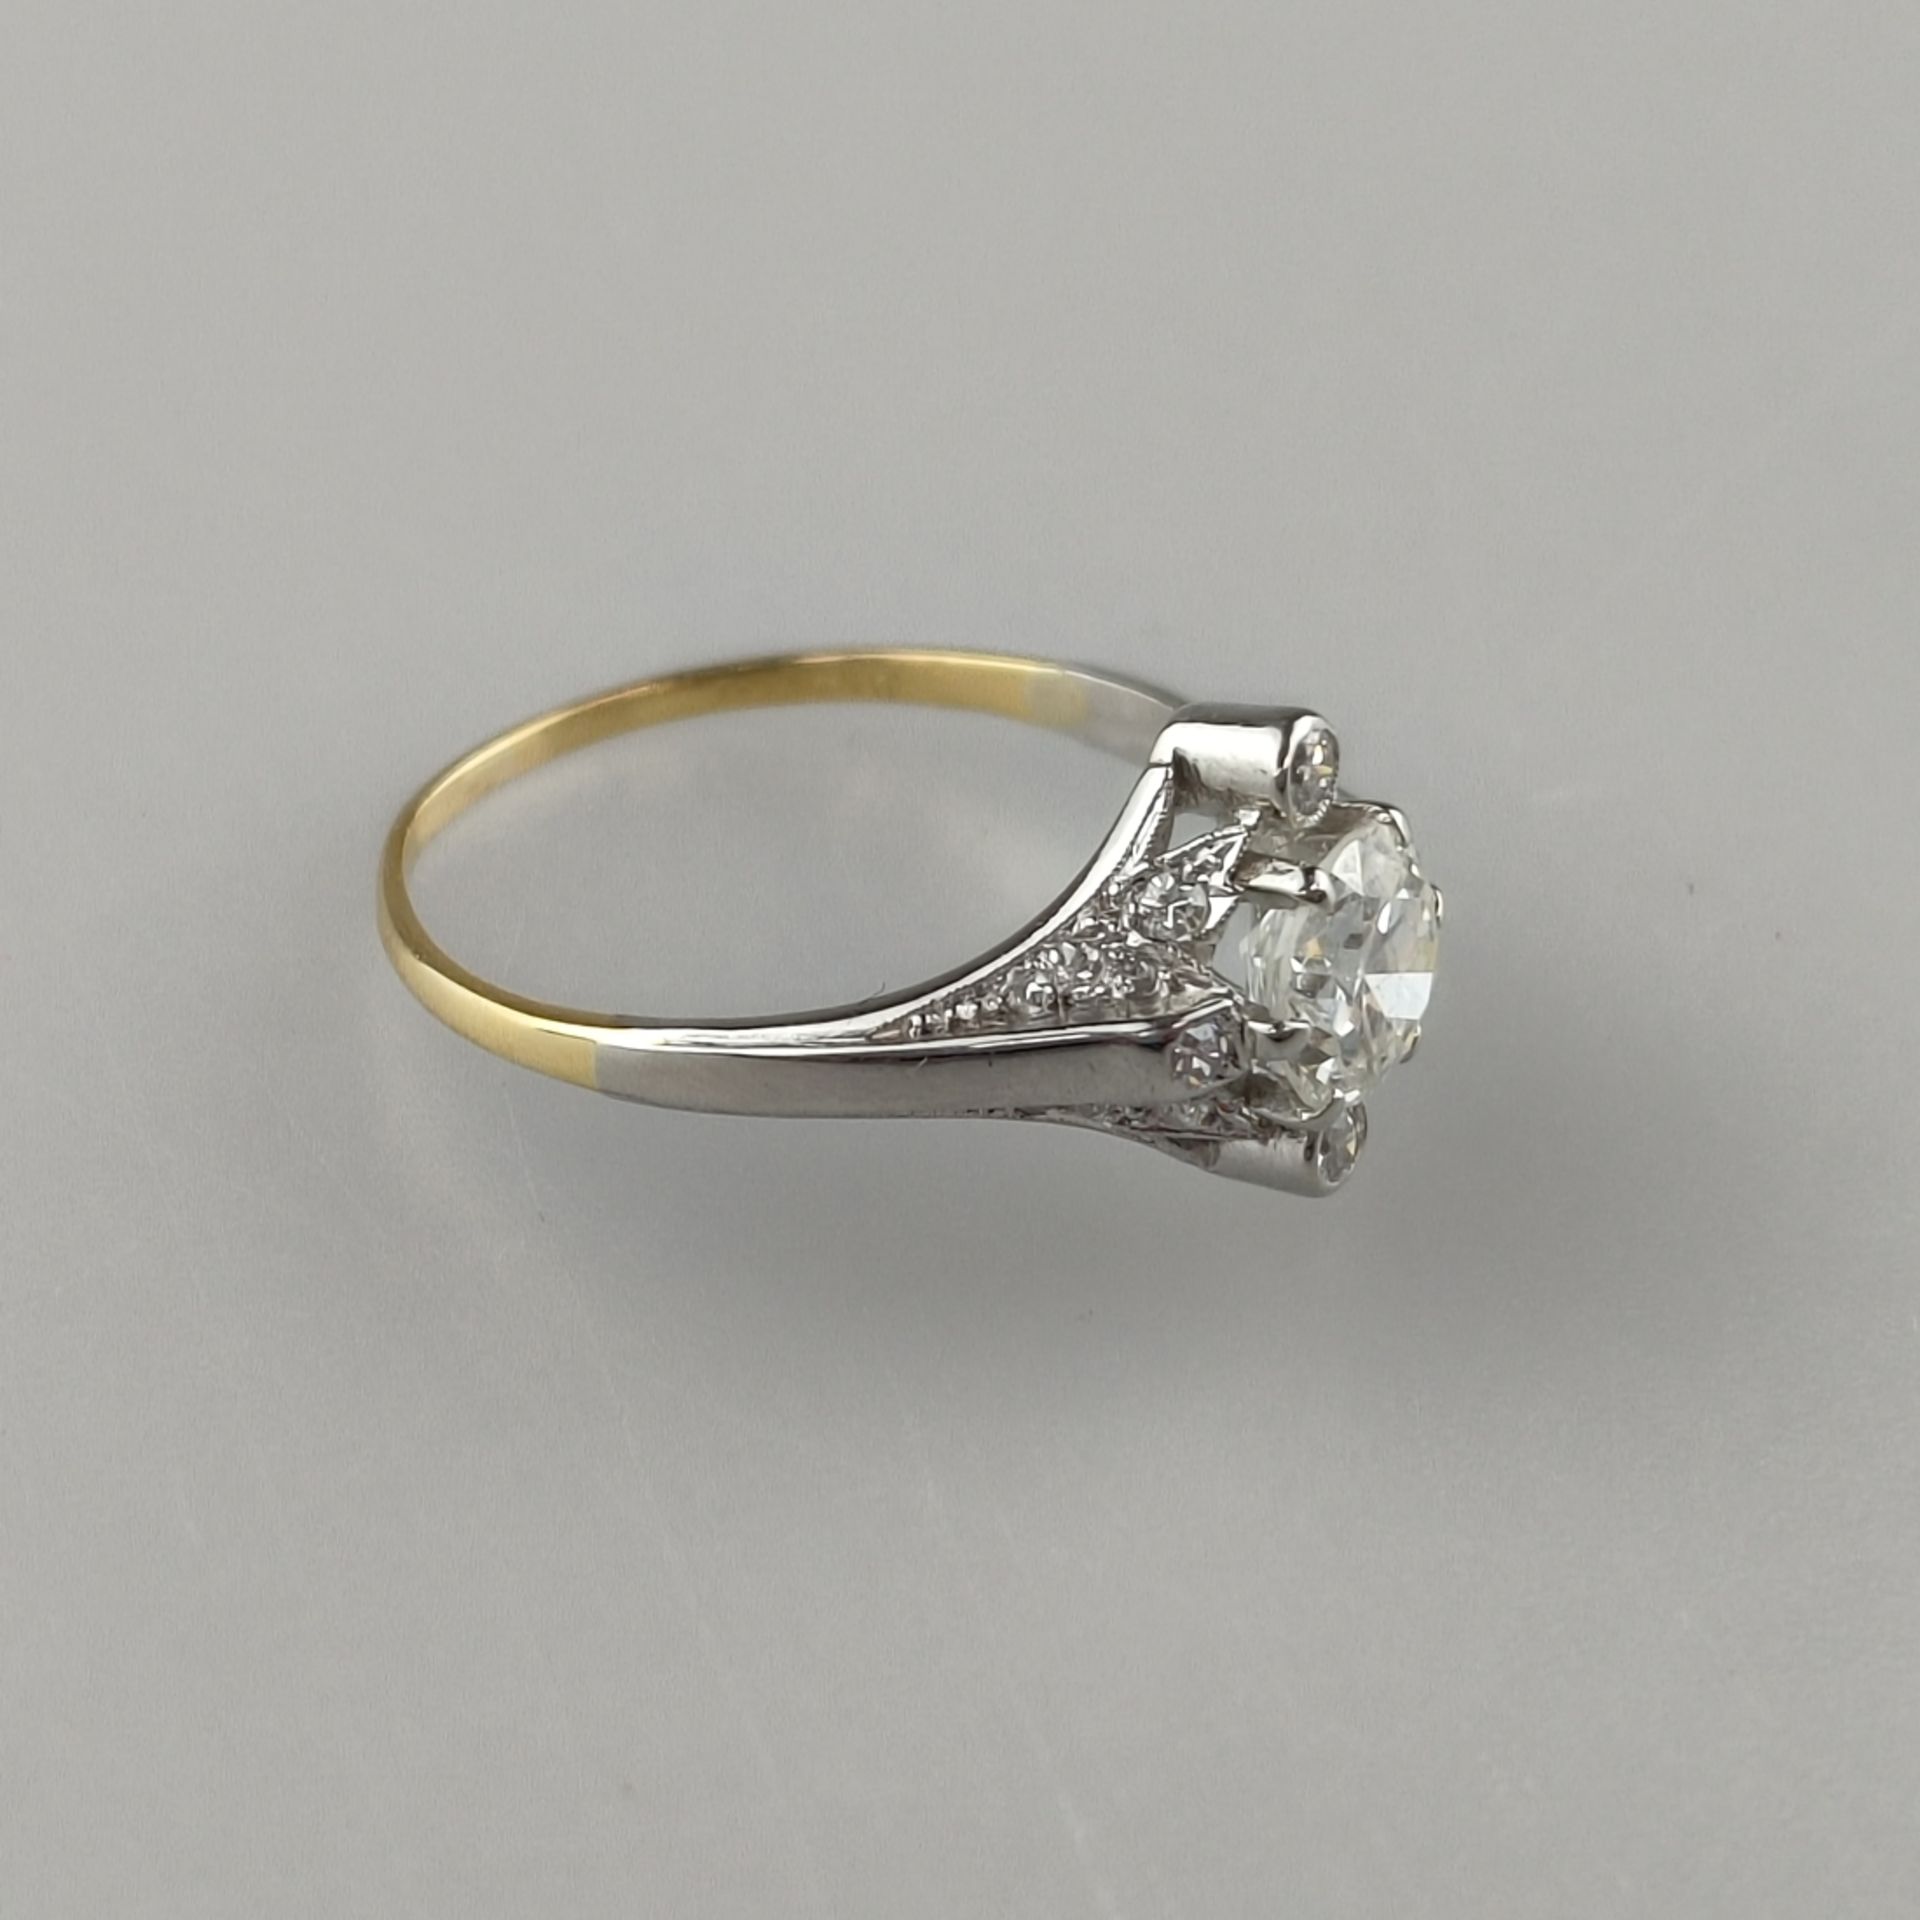 Diamantring - Weiß-/ Gelbgold 750/000, gestempelt, zentraler Diamant im Brillantschliff von 0,80 ct - Bild 3 aus 6